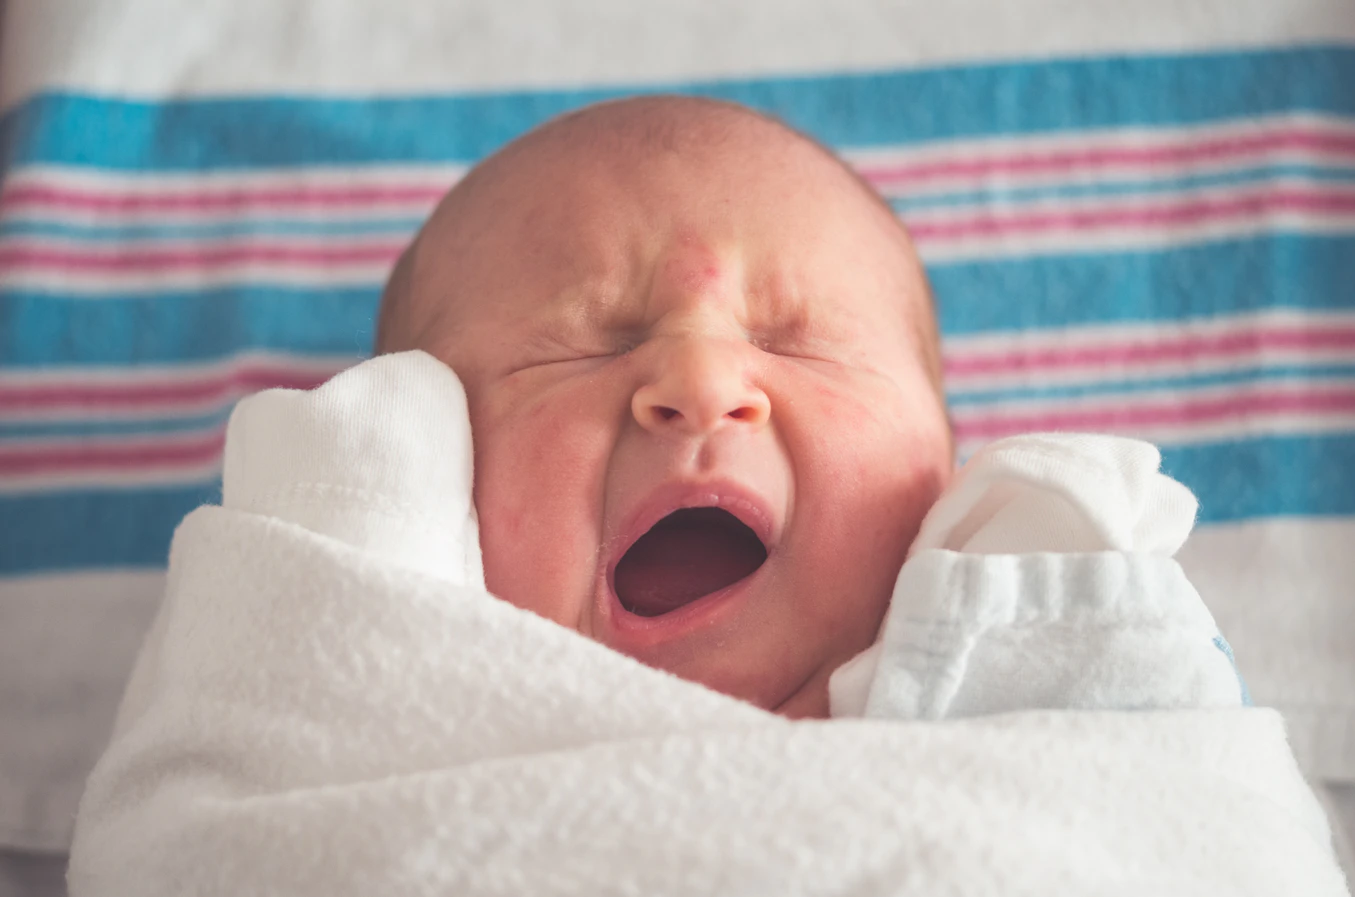 Yawning infant